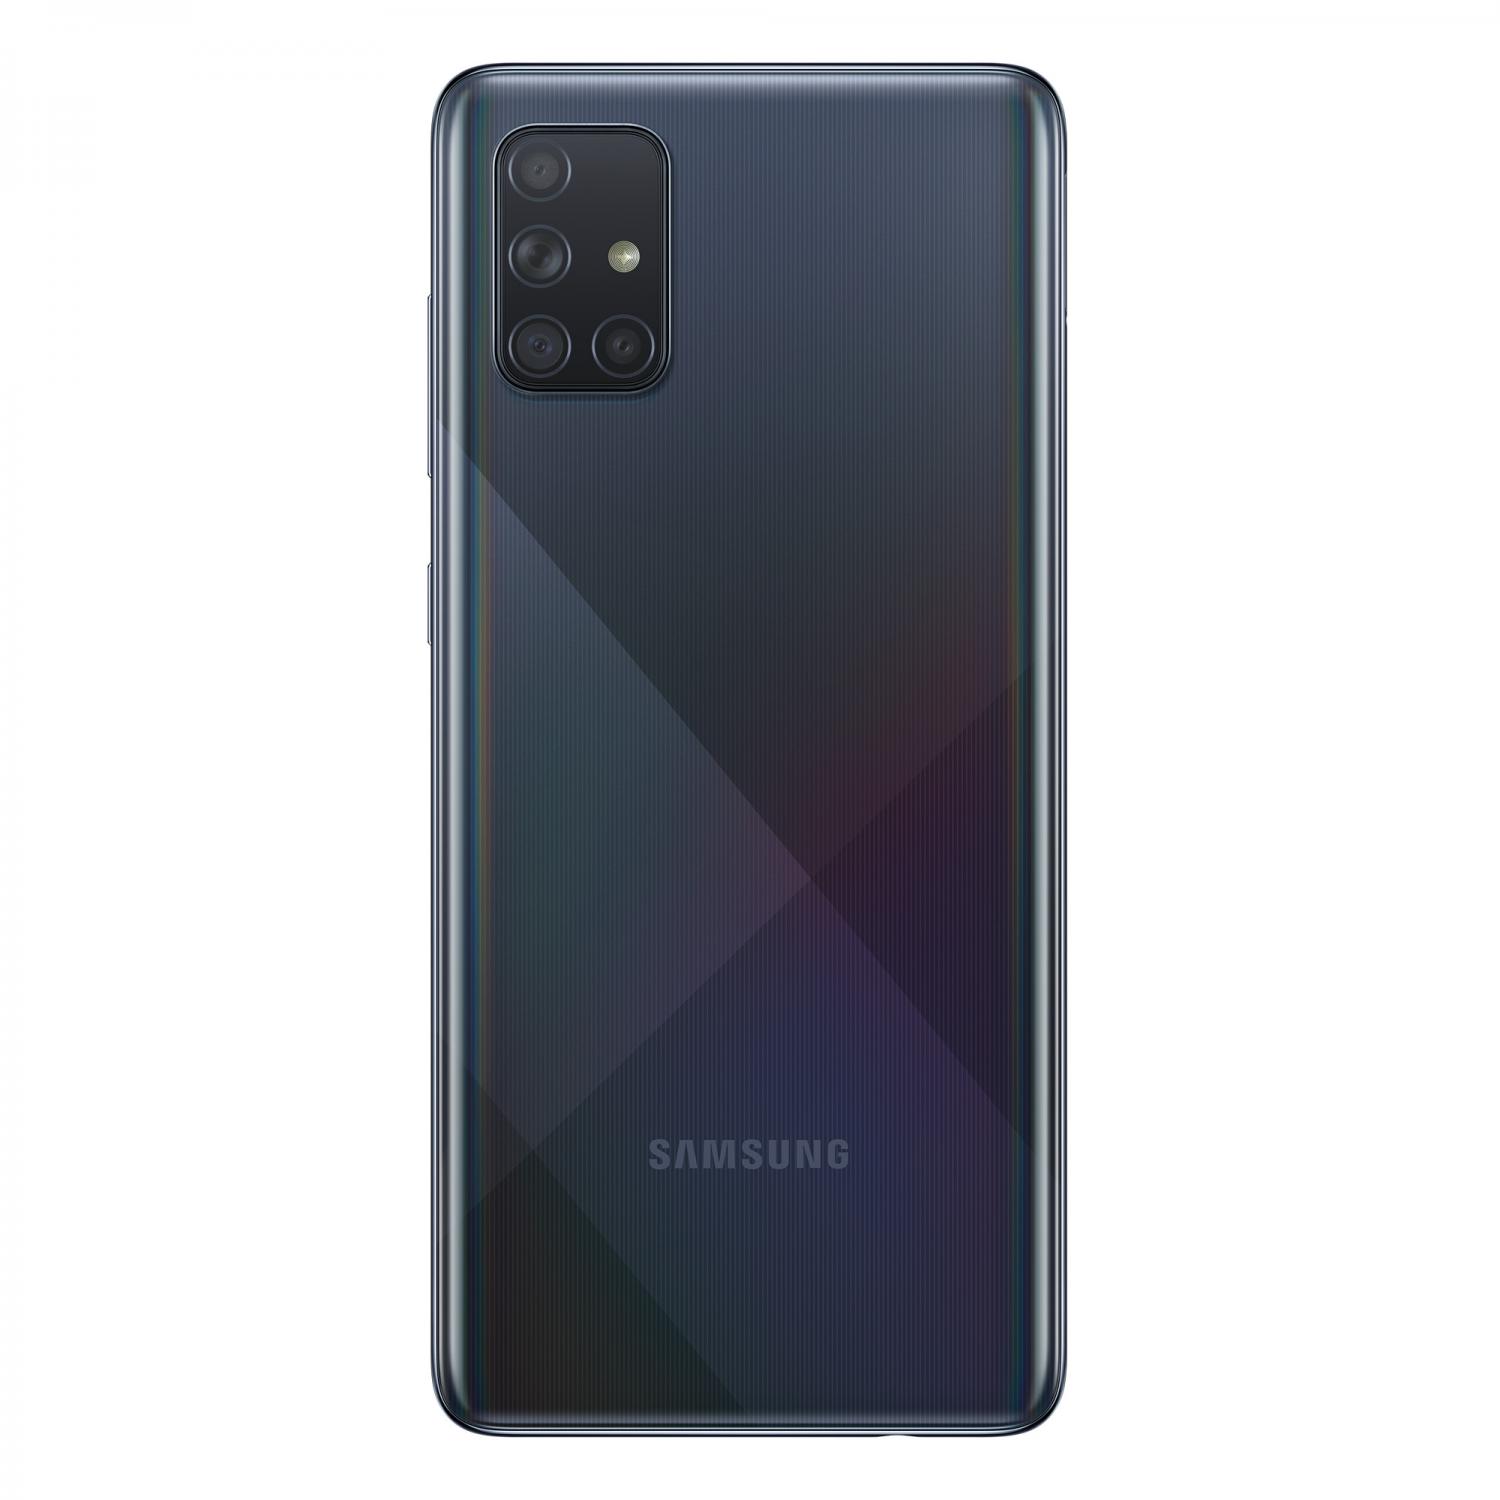 The Best Samsung Galaxy A71 Deals In December 2020 Techradar